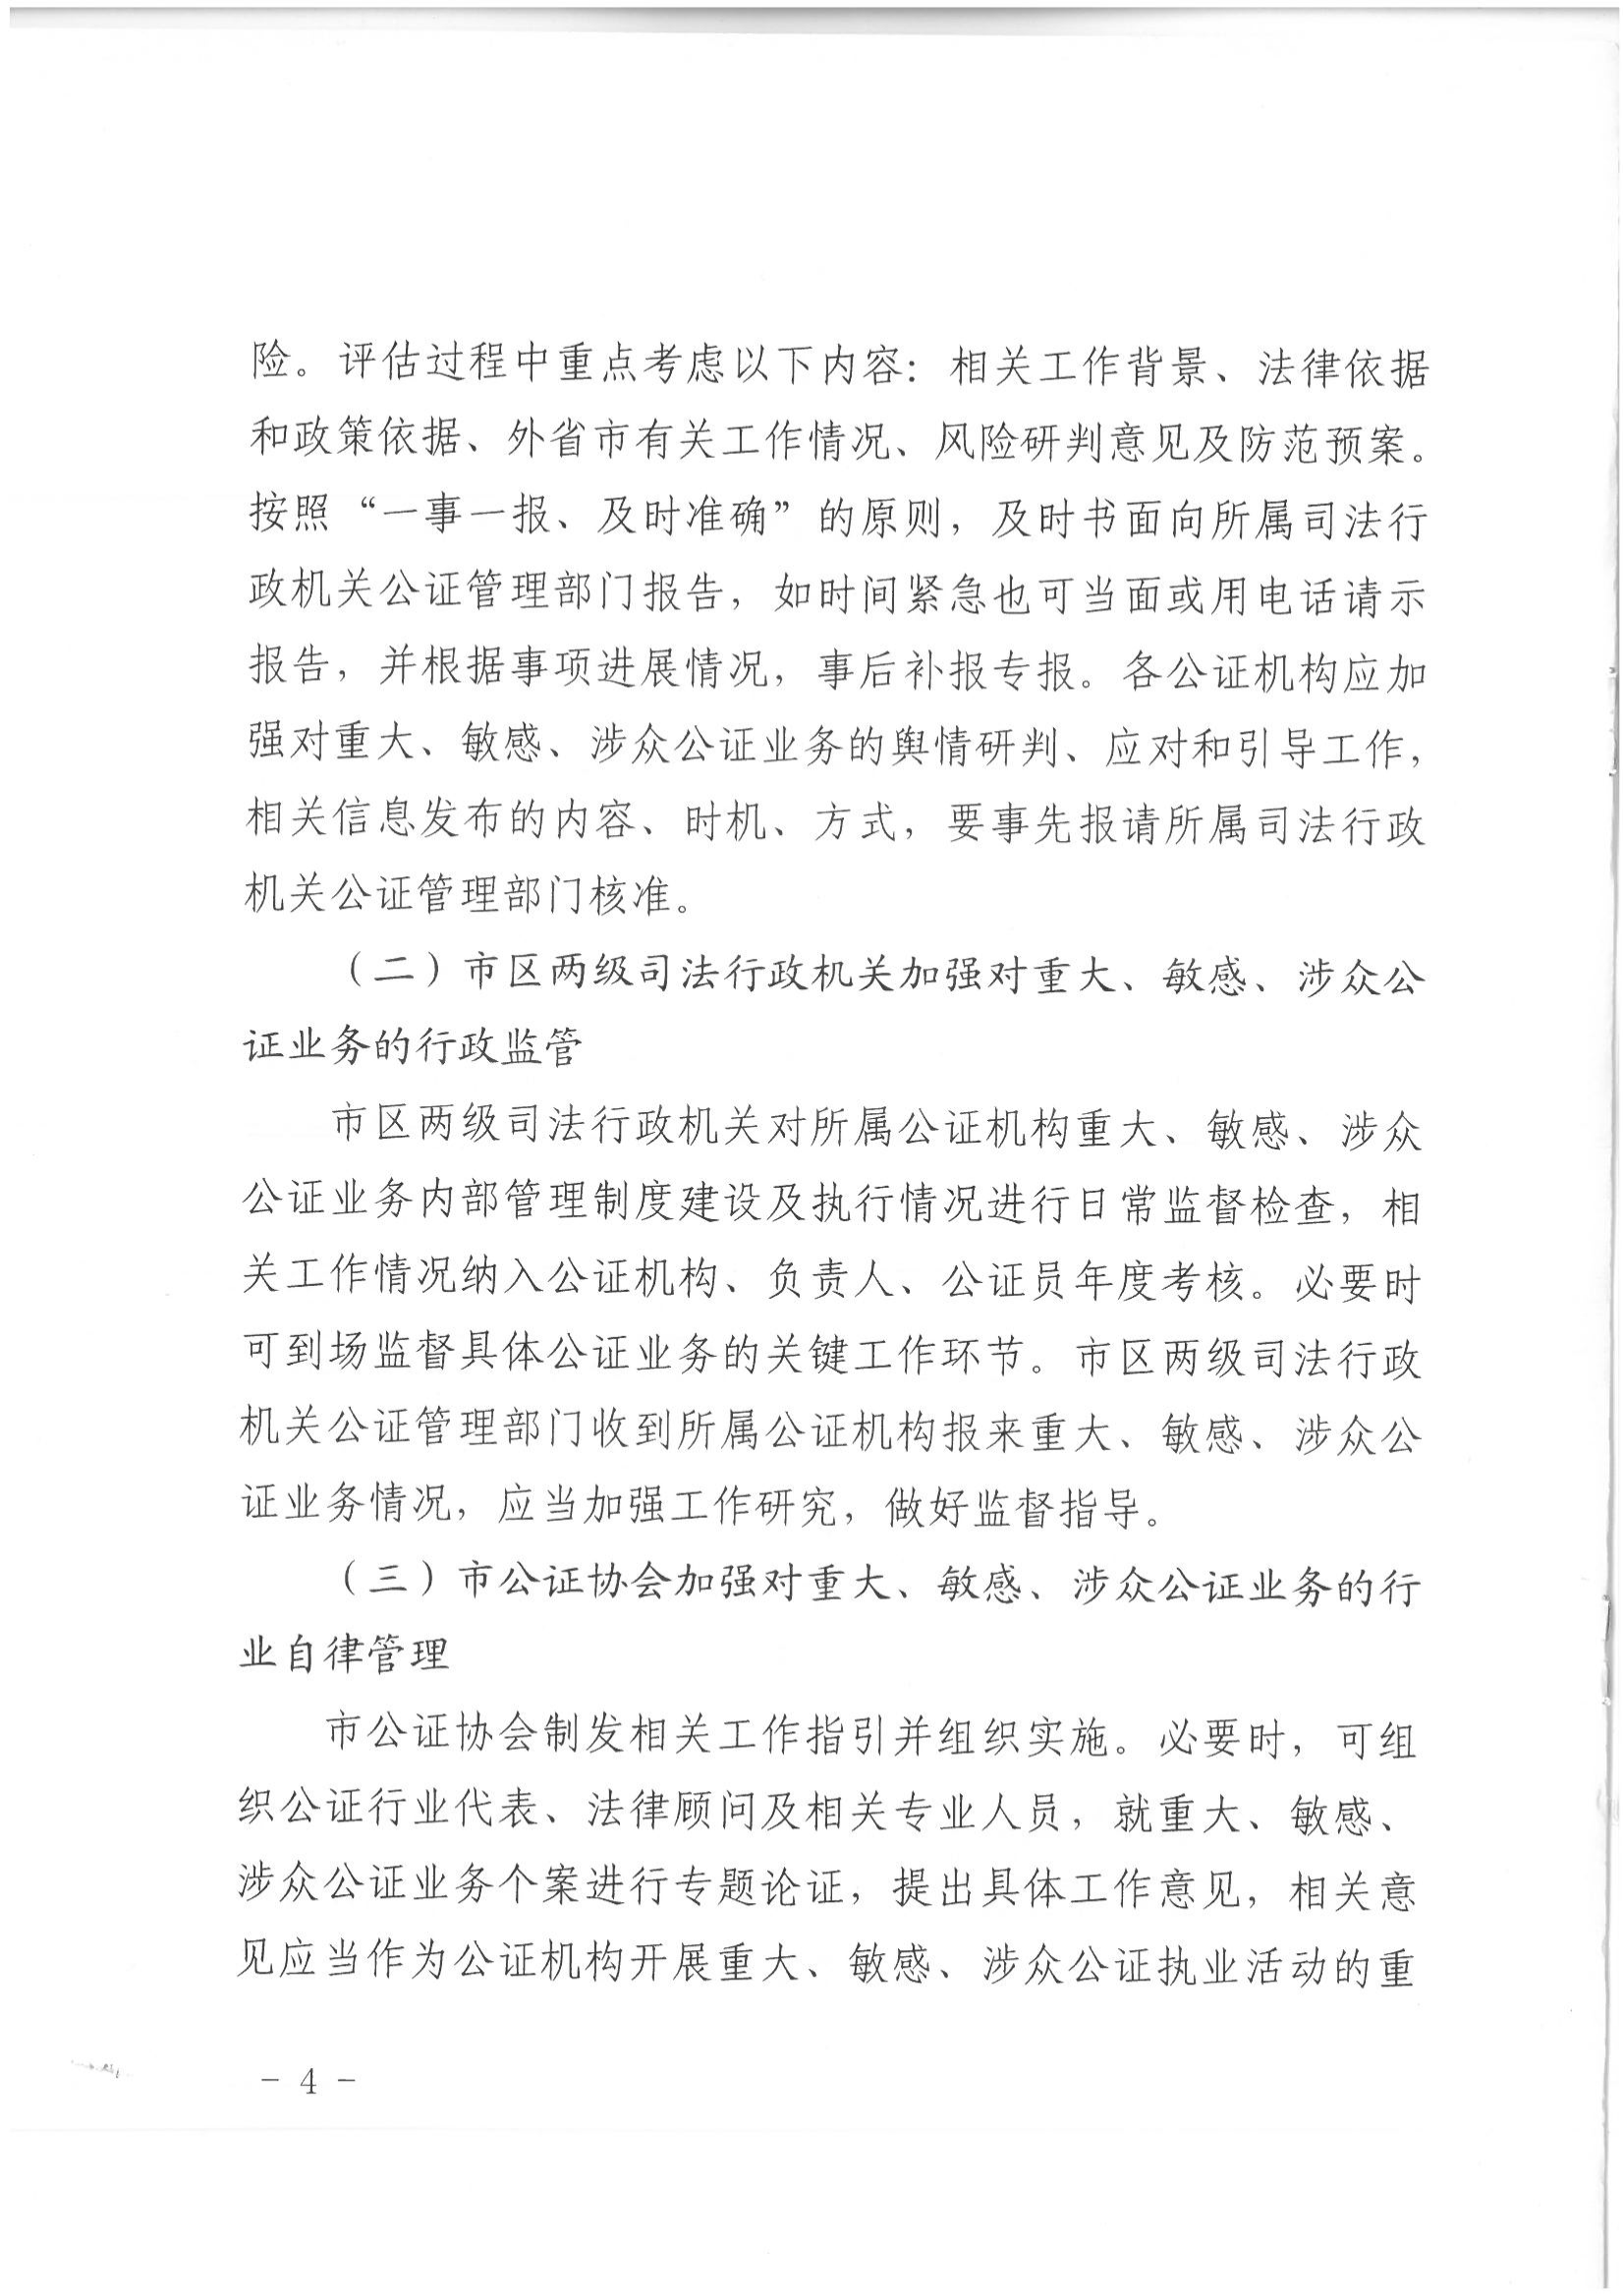 1北京市司法局办公室关于加强重大、敏感、涉众公证业务管理工作的通知_03